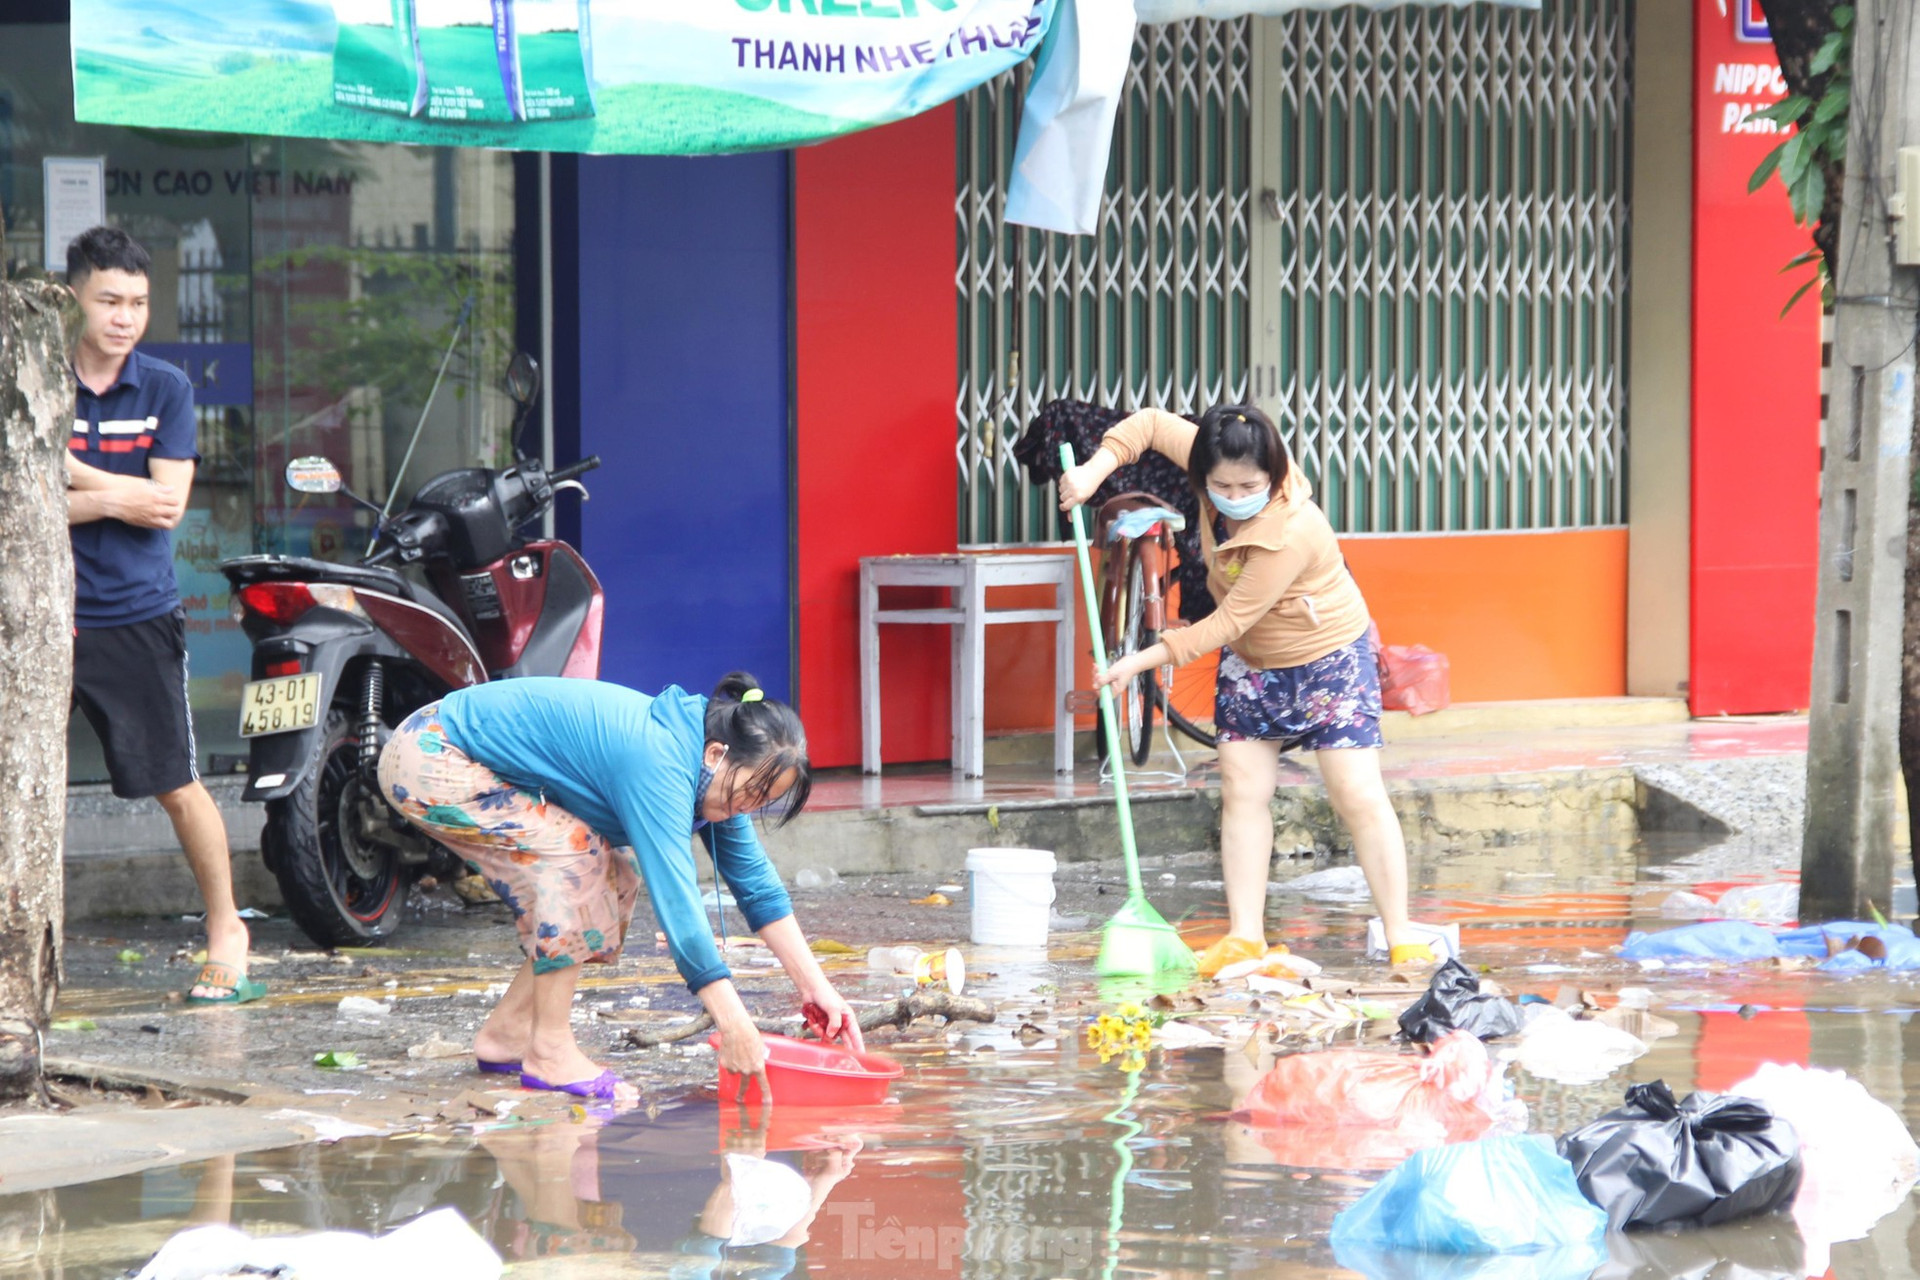 Thức xuyên đêm lo lắng, người dân Đà Nẵng lại tất bật dọn dẹp nhà cửa sau mưa ngập lịch sử ảnh 11